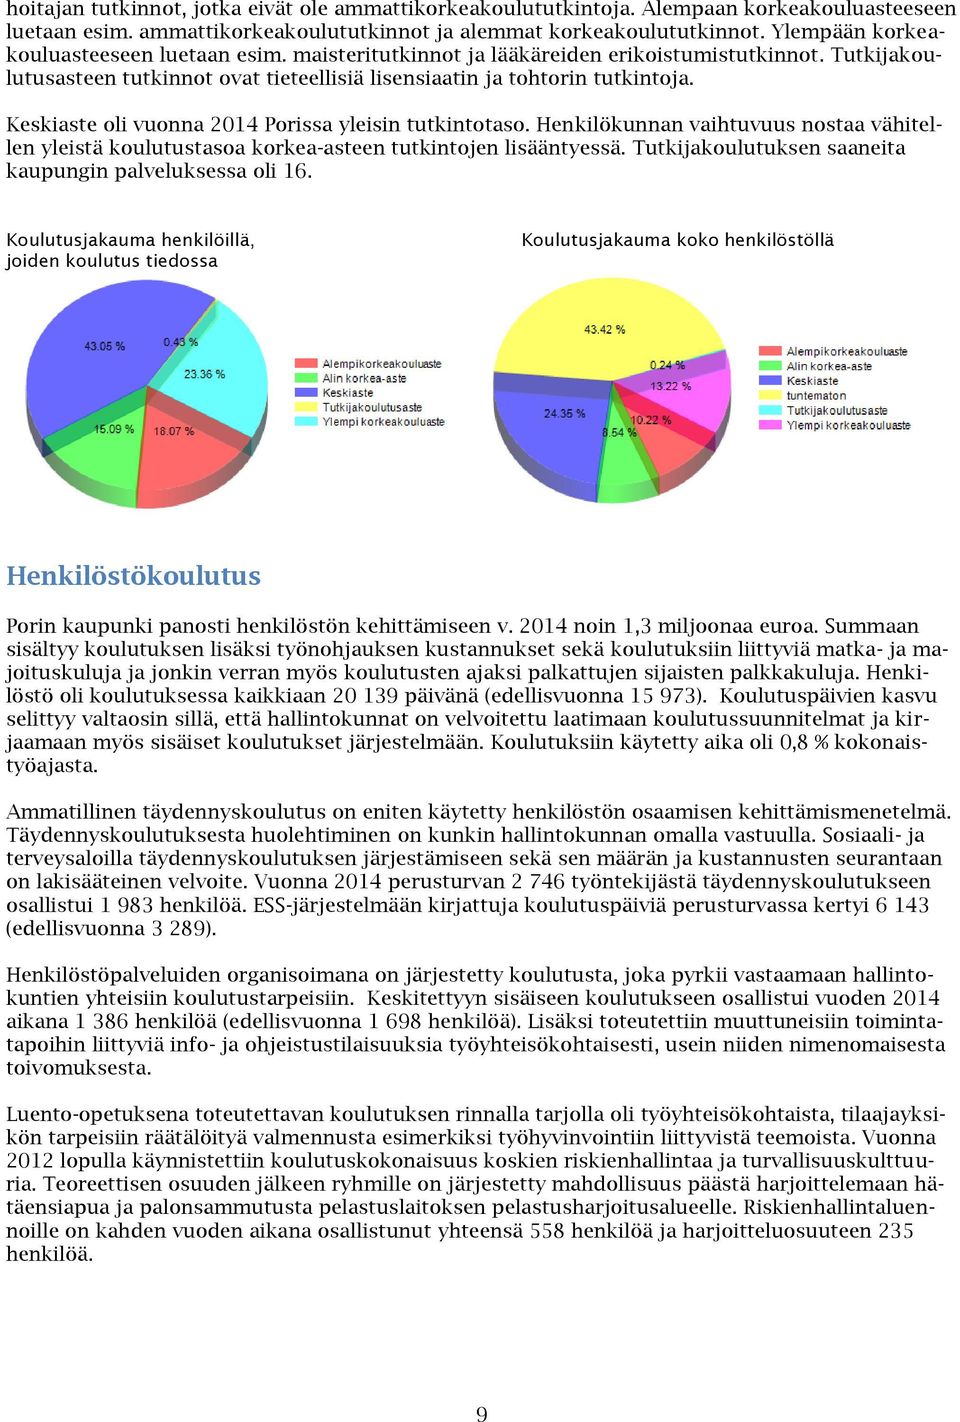 Keskiaste oli vuonna 2014 Porissa yleisin tutkintotaso. Henkilökunnan vaihtuvuus nostaa vähitellen yleistä koulutustasoa korkea-asteen tutkintojen lisääntyessä.